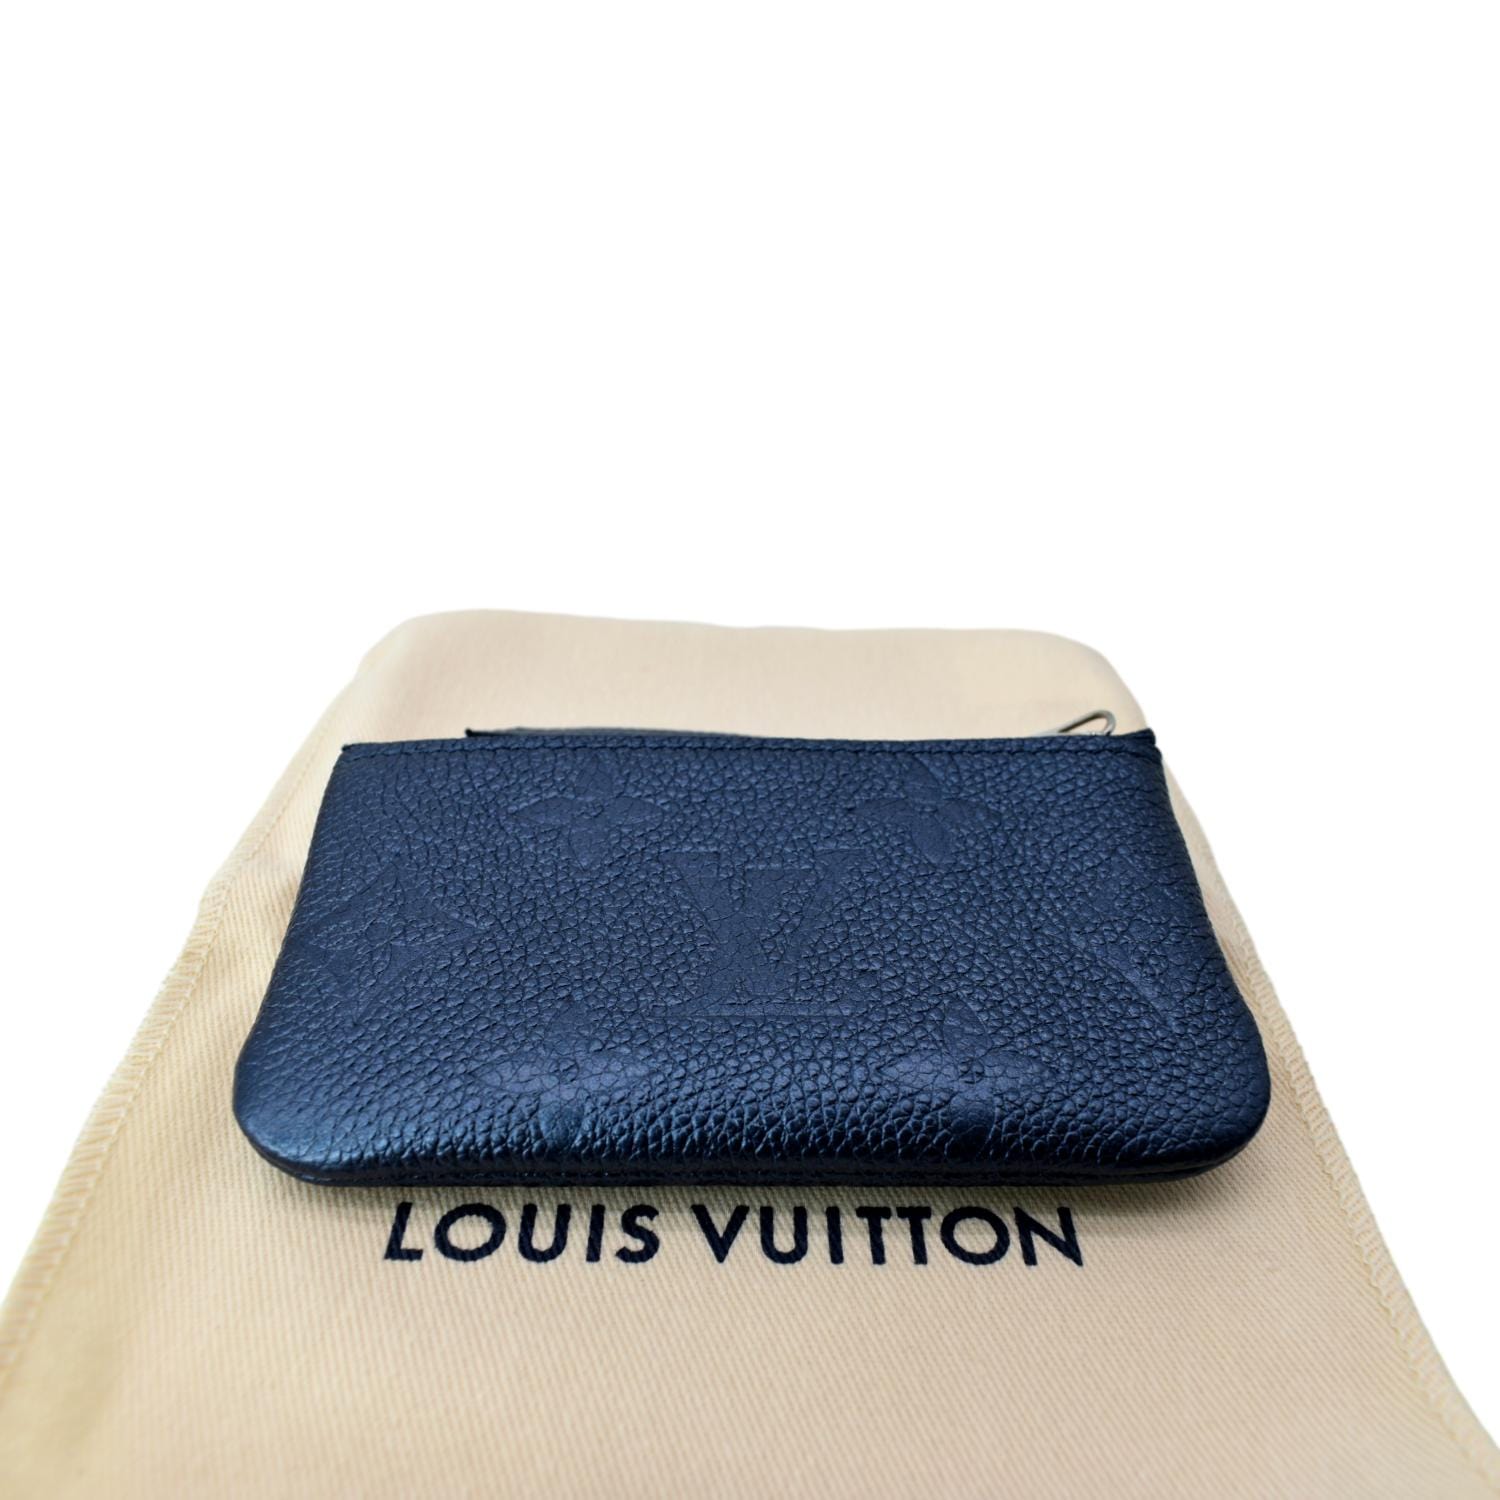 LOUIS VUITTON BLUE MONOGRAM EMPREINTE KEY POUCH / CARD HOLDER - Still in  fashion